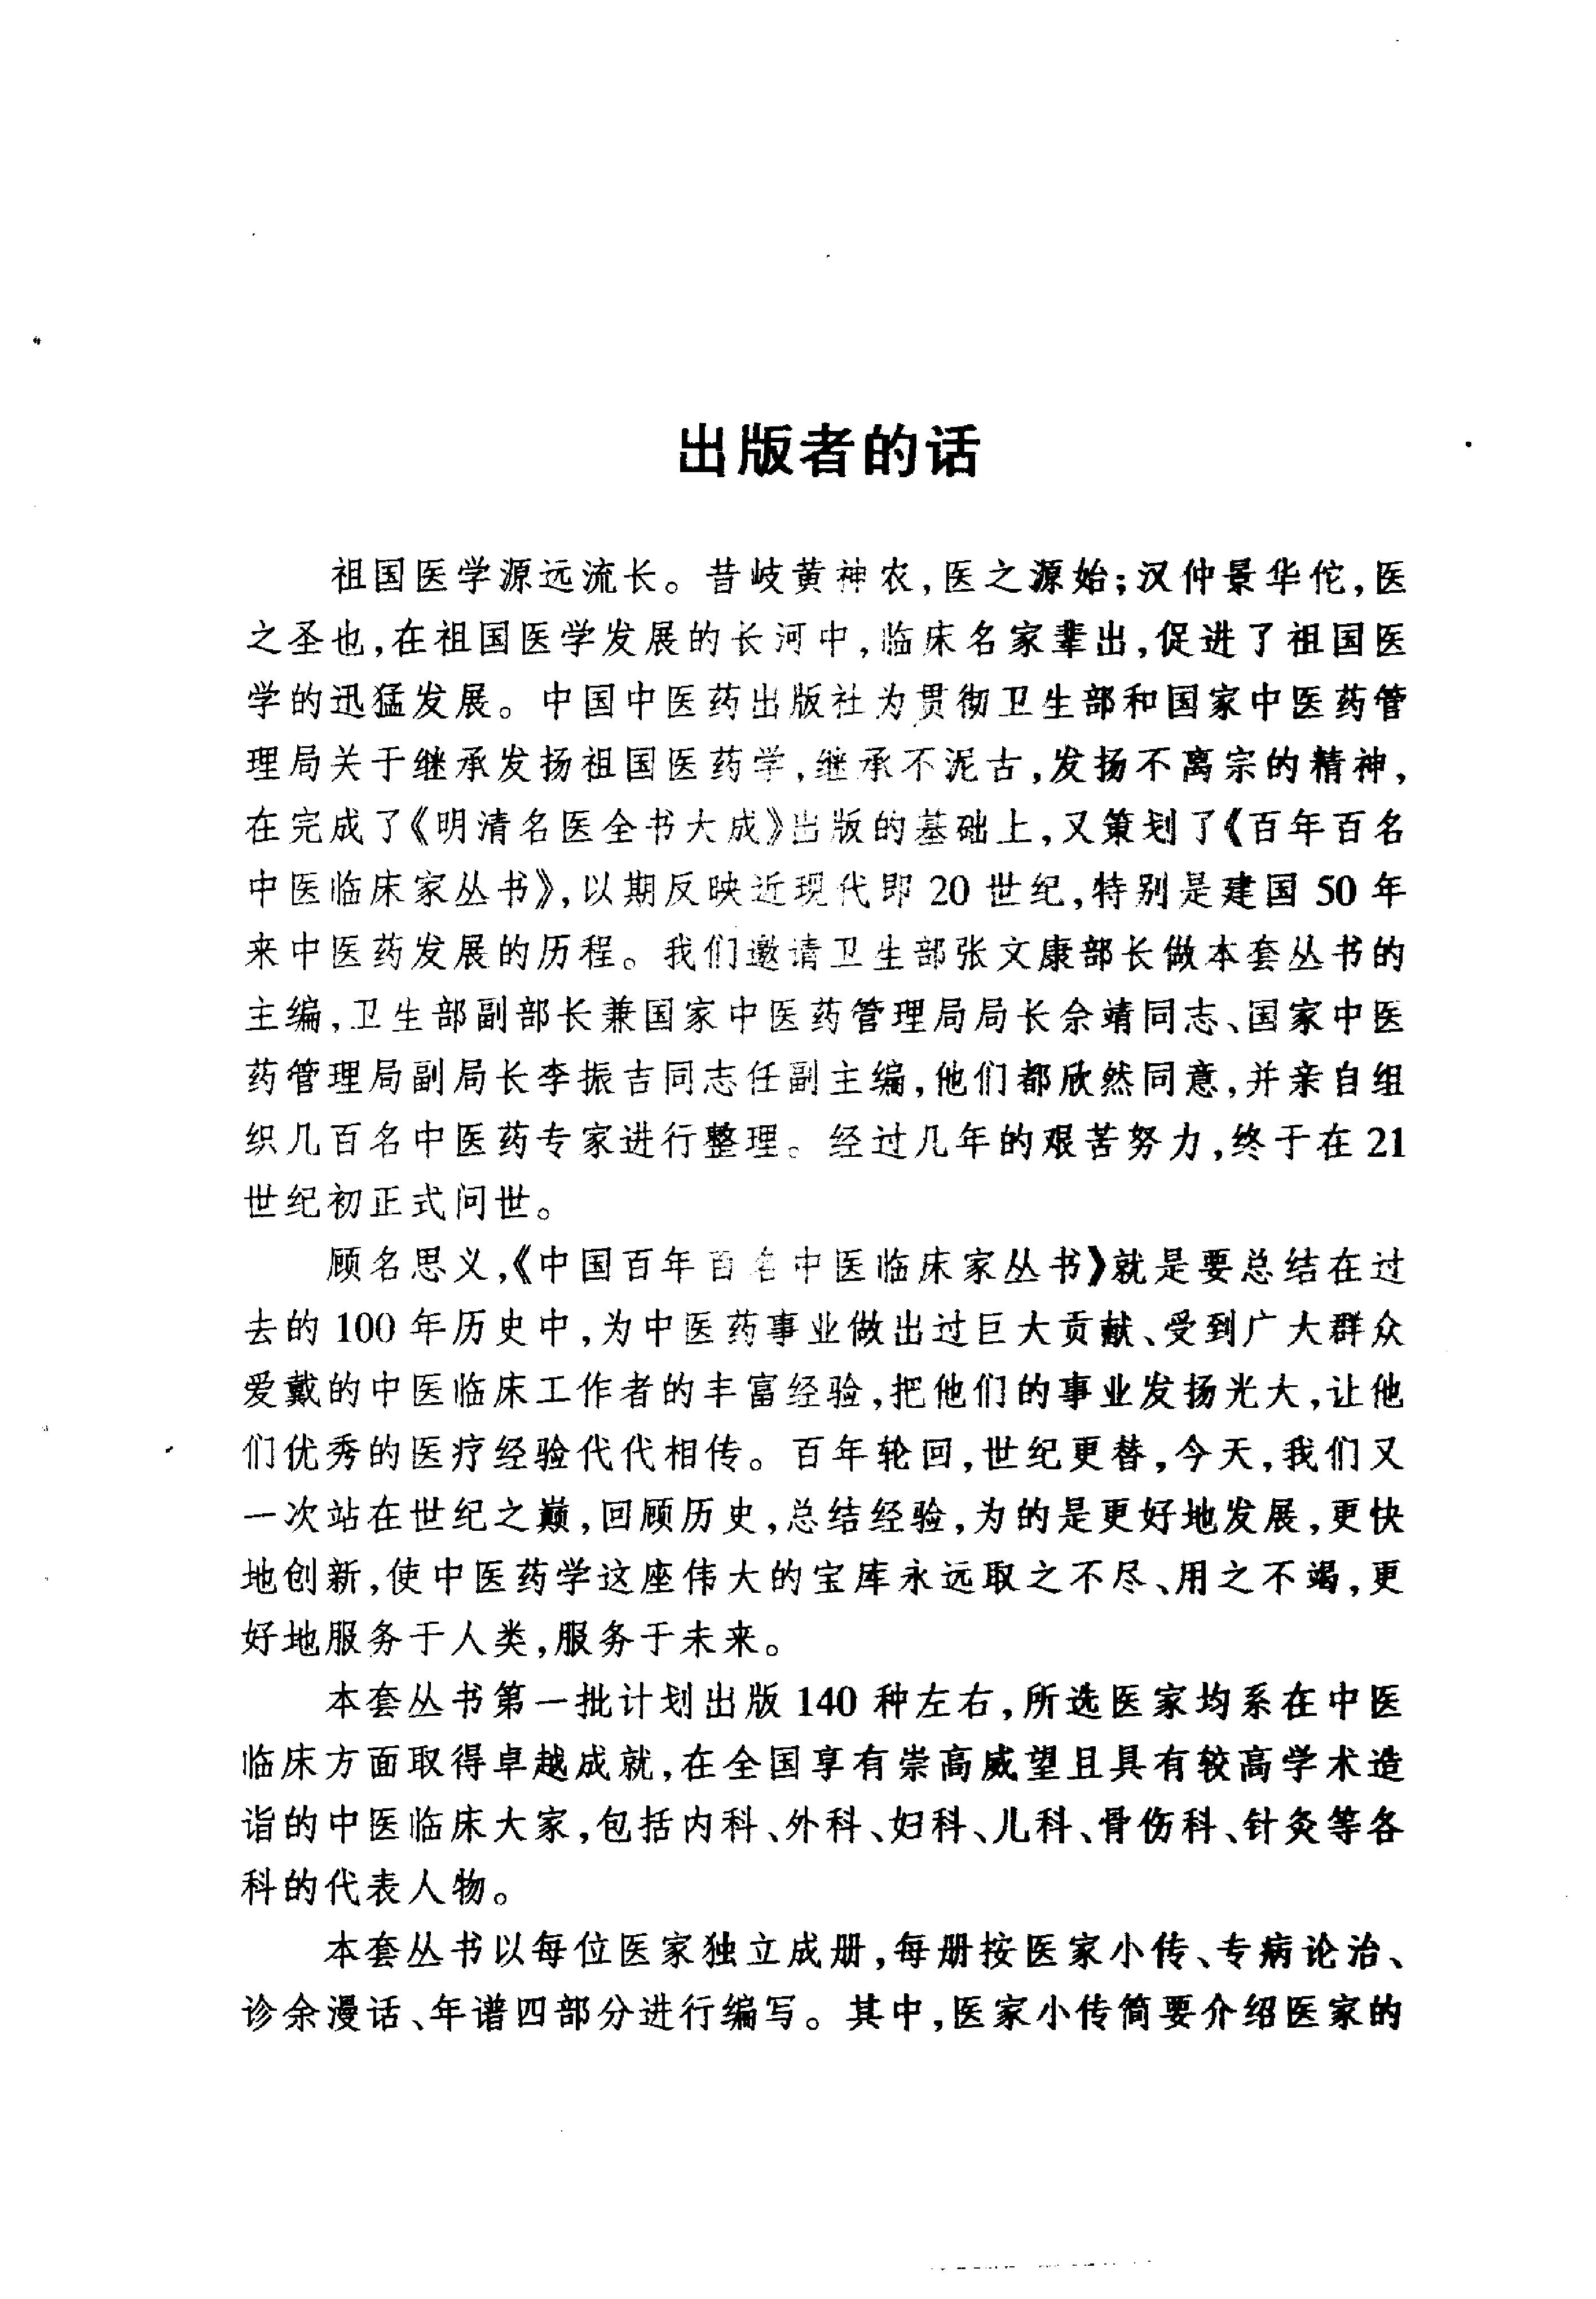 中国百年百名中医临床家丛书--宋祚民.pdf(15.09MB_381页)